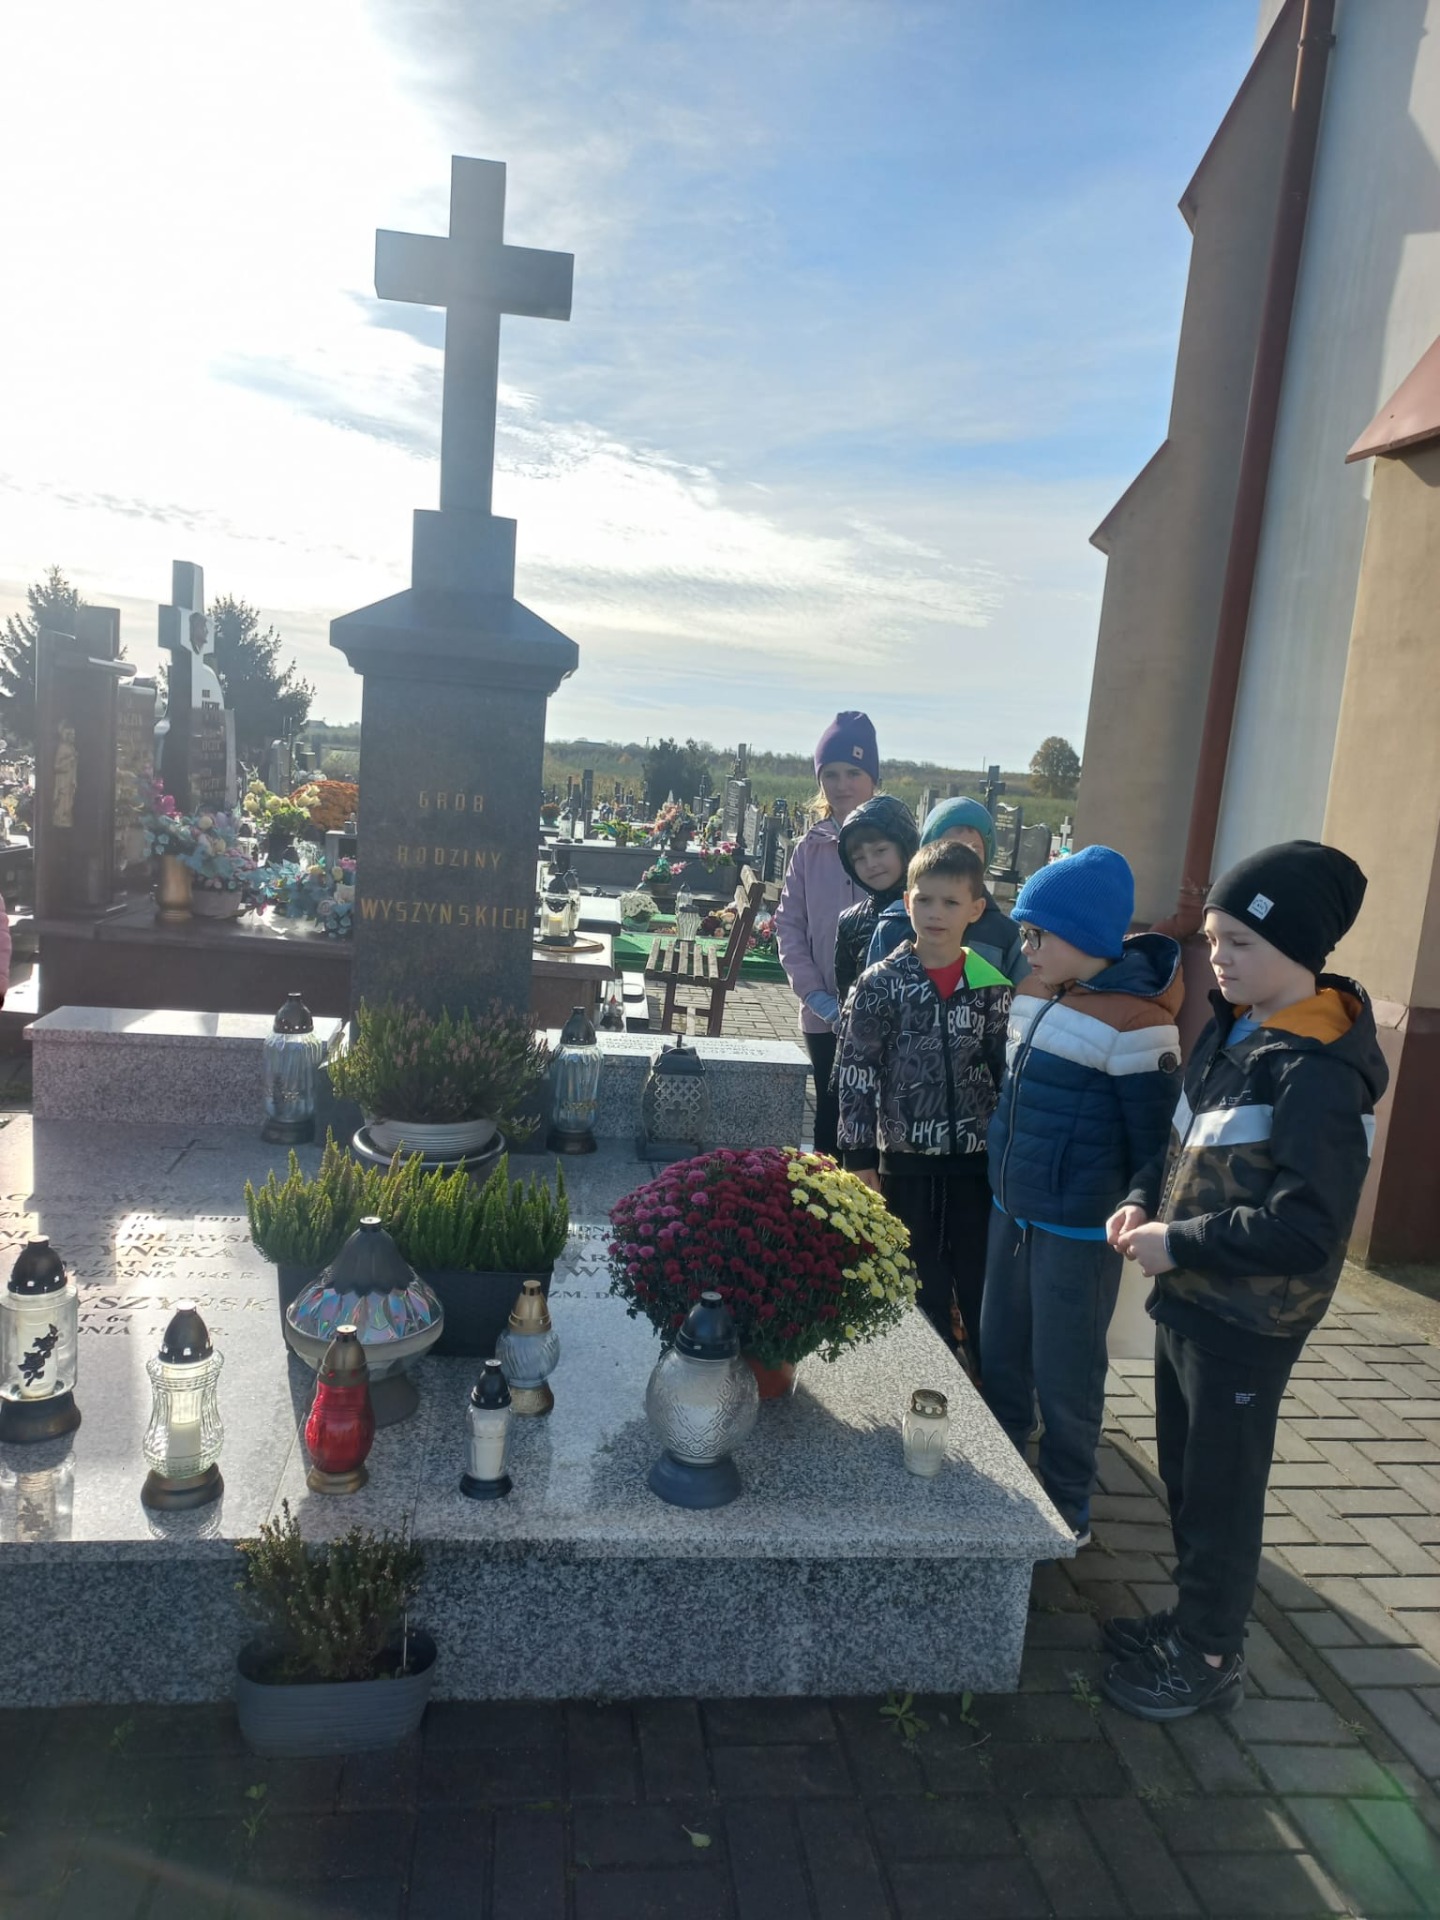 Klasa II wzięła udział w akcji Szkoła pamięta, odwiedziła grób Rodziny Wyszyńskich i zapaliła znicz.